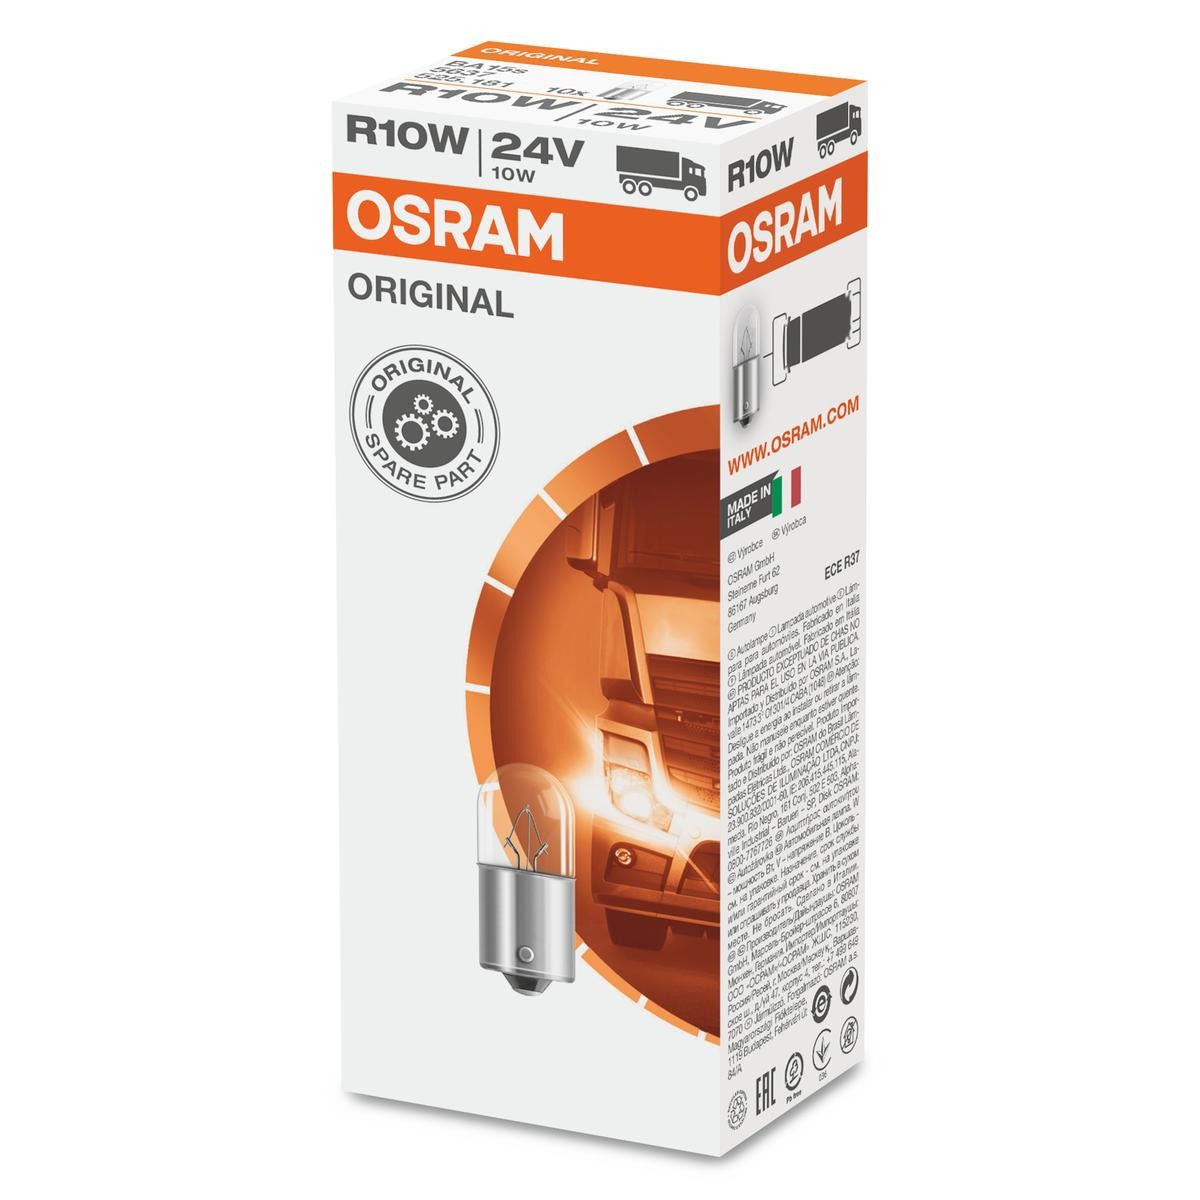 R10W OSRAM ORIGINAL LINE 24V 10W, R10W, BA15s Bulb, licence plate light 5637 buy